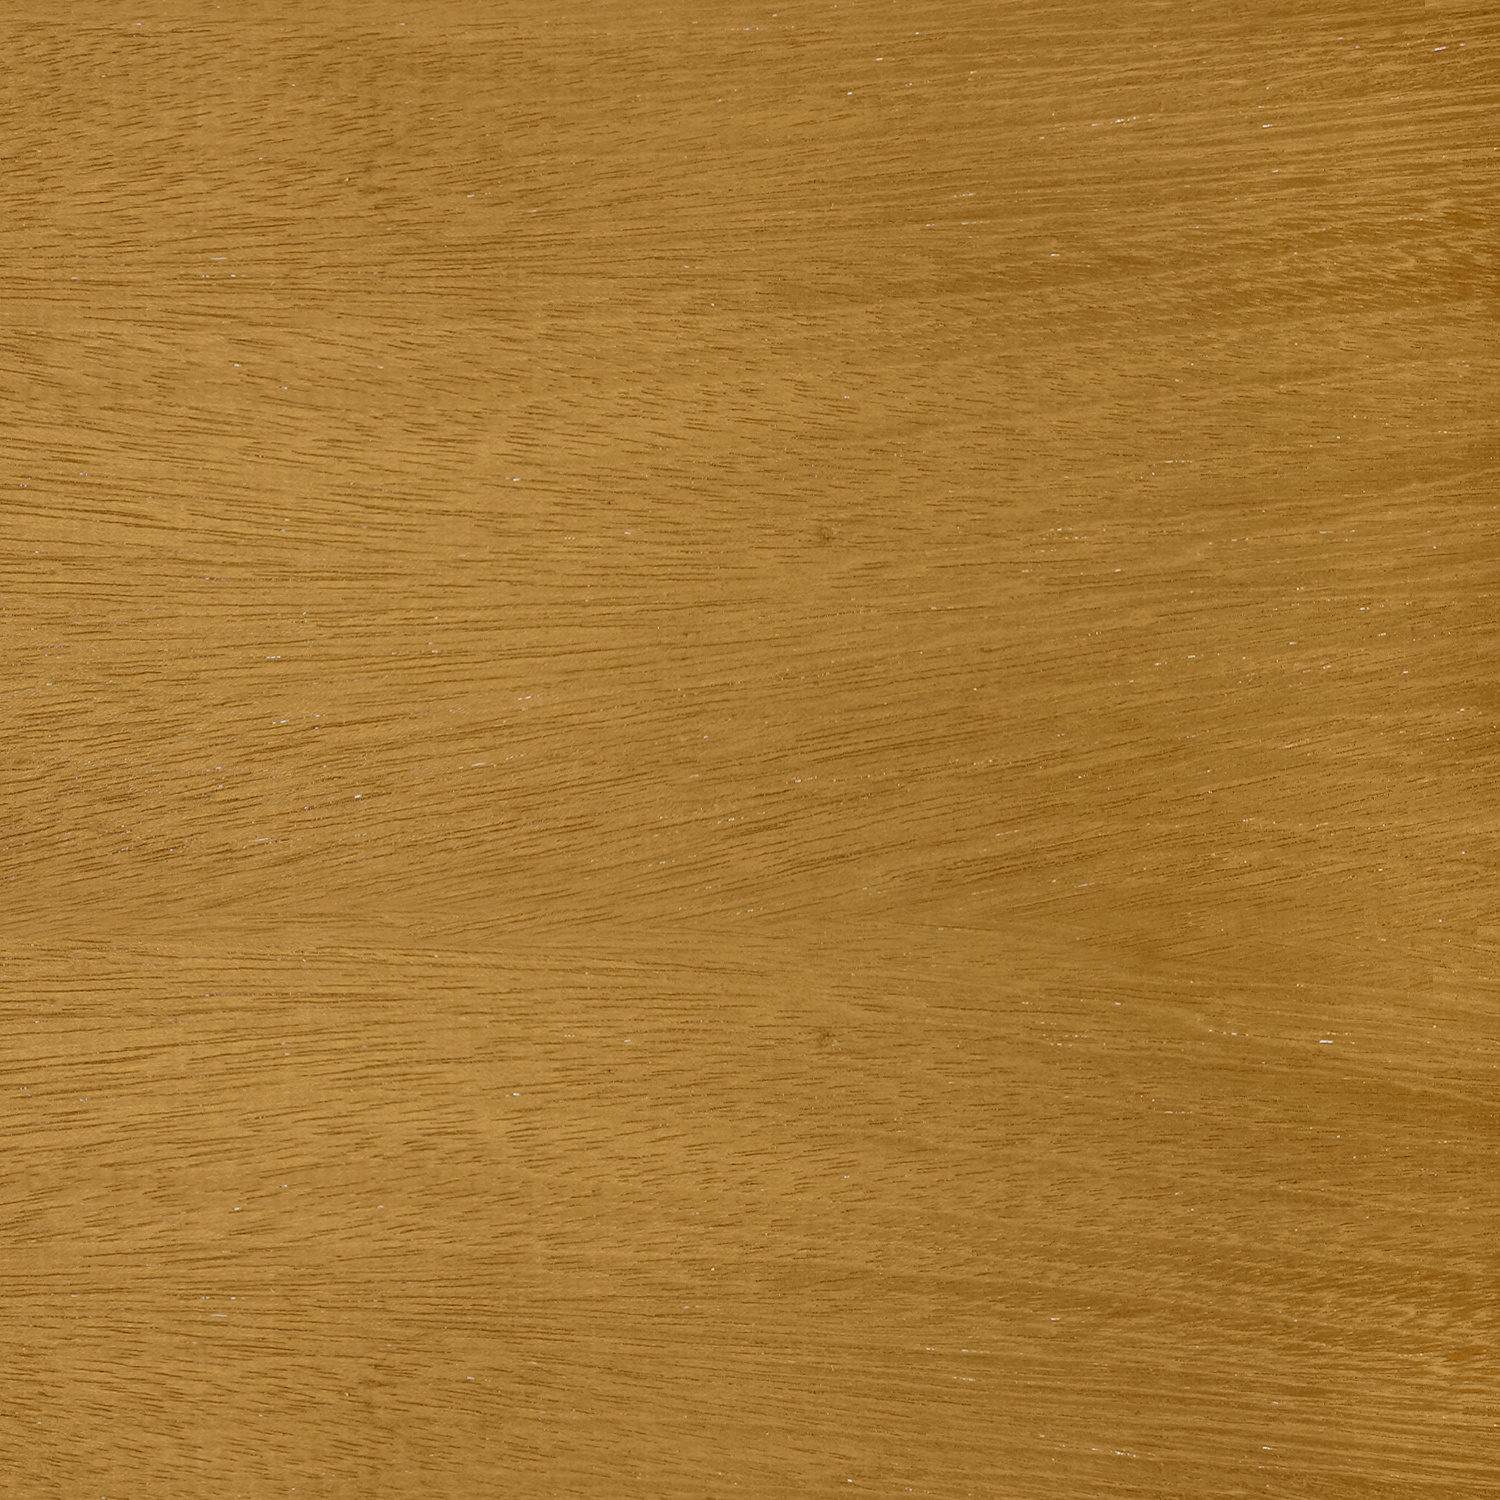  Guariuba rhombus deel - profiel - plank 21x143mm geschaafd - kunstmatig gedroogd (kd 18-20%)- tropisch hardhout